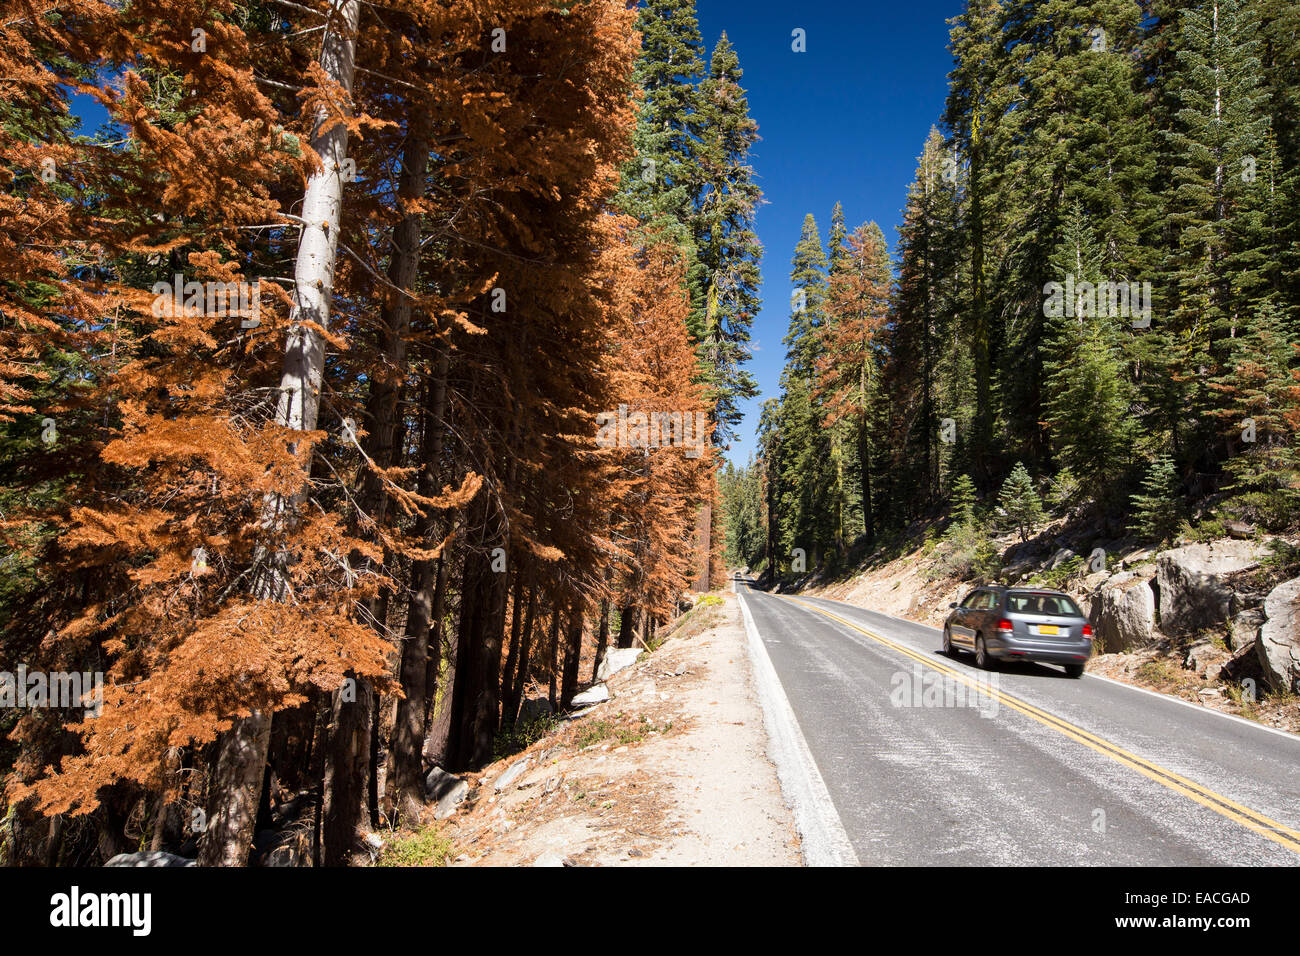 Wildfire danni nel Parco Nazionale di Yosemite in California, Stati Uniti d'America. La maggior parte della California è in eccezionale siccità, il grado più alto di classificazione della siccità che ha portato ad un aumento del numero di incendi. Foto Stock